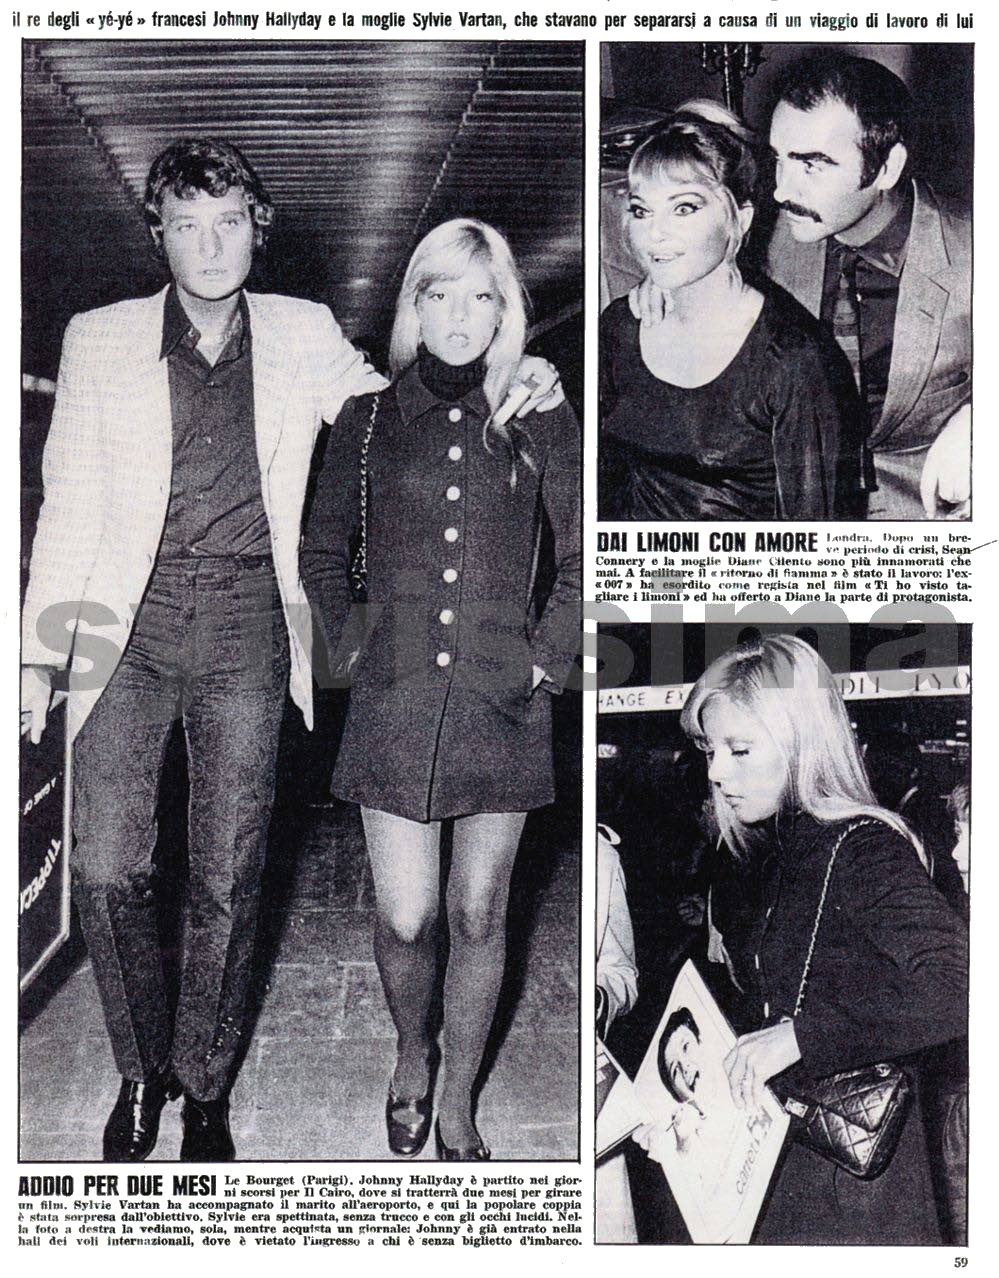 Sylvie Vartan et Johnny Hallyday, article "Oggi", novembre 1969